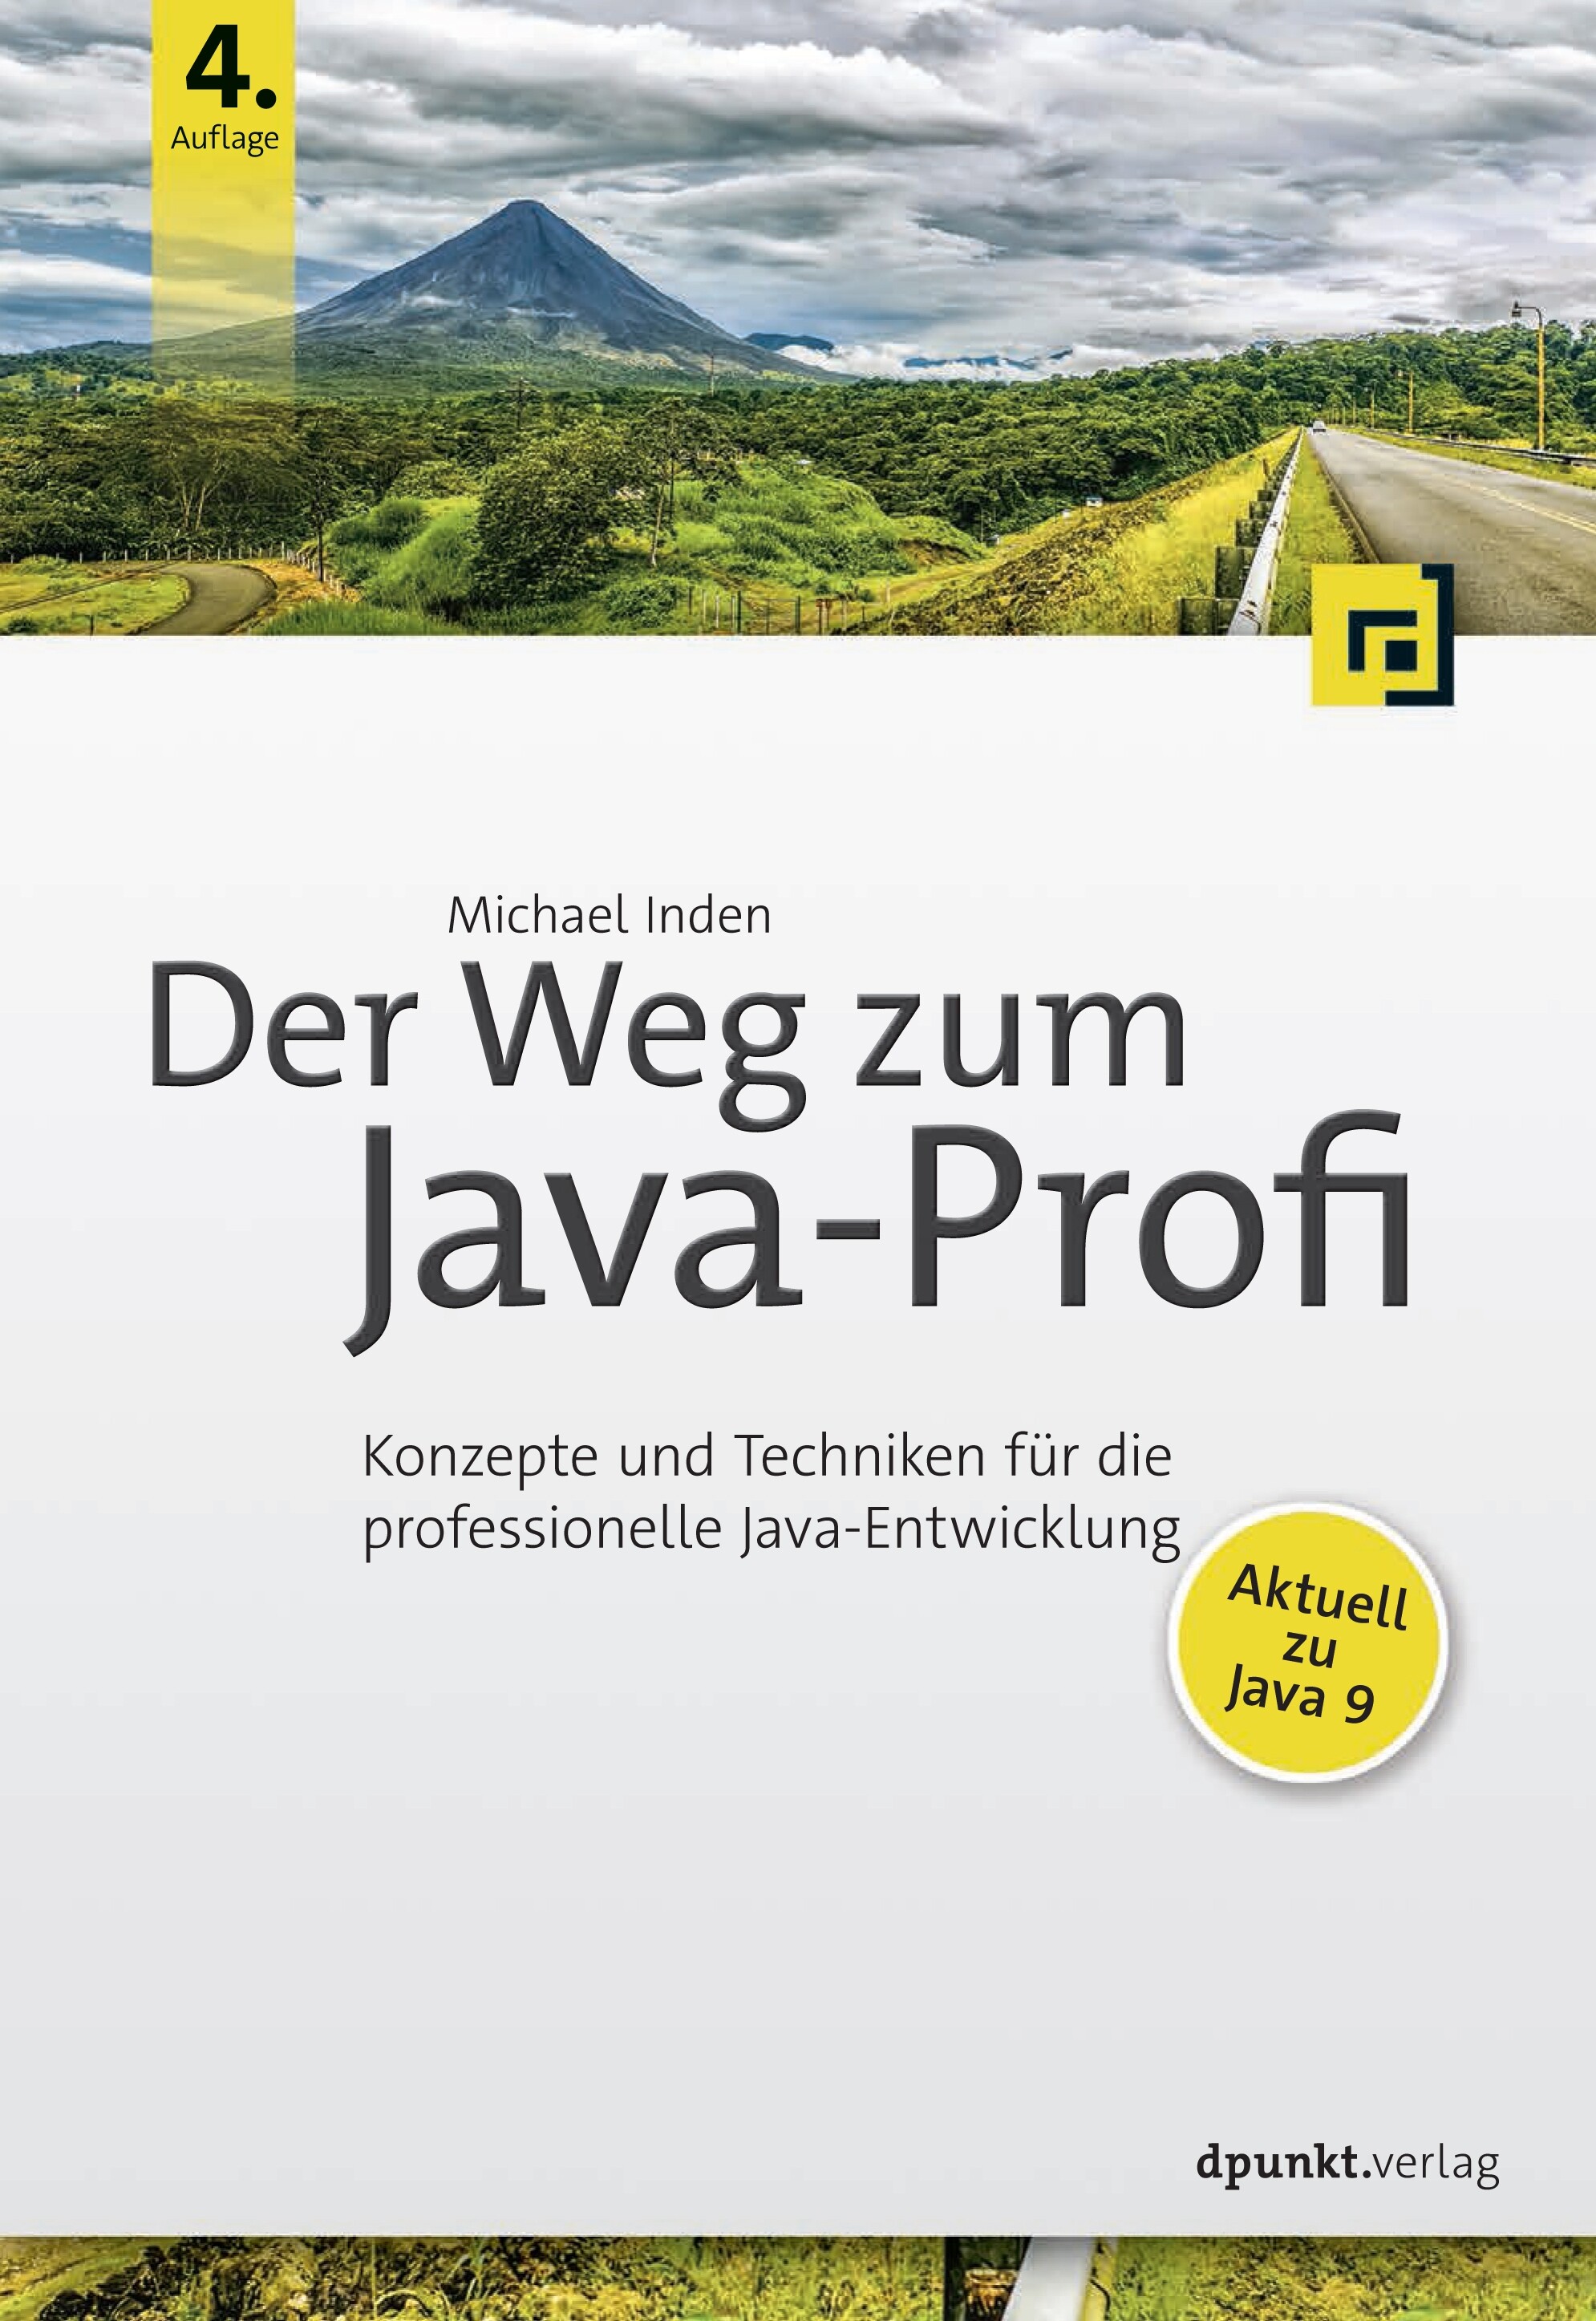 Der Weg zum Java-Profi (4. Auflage)